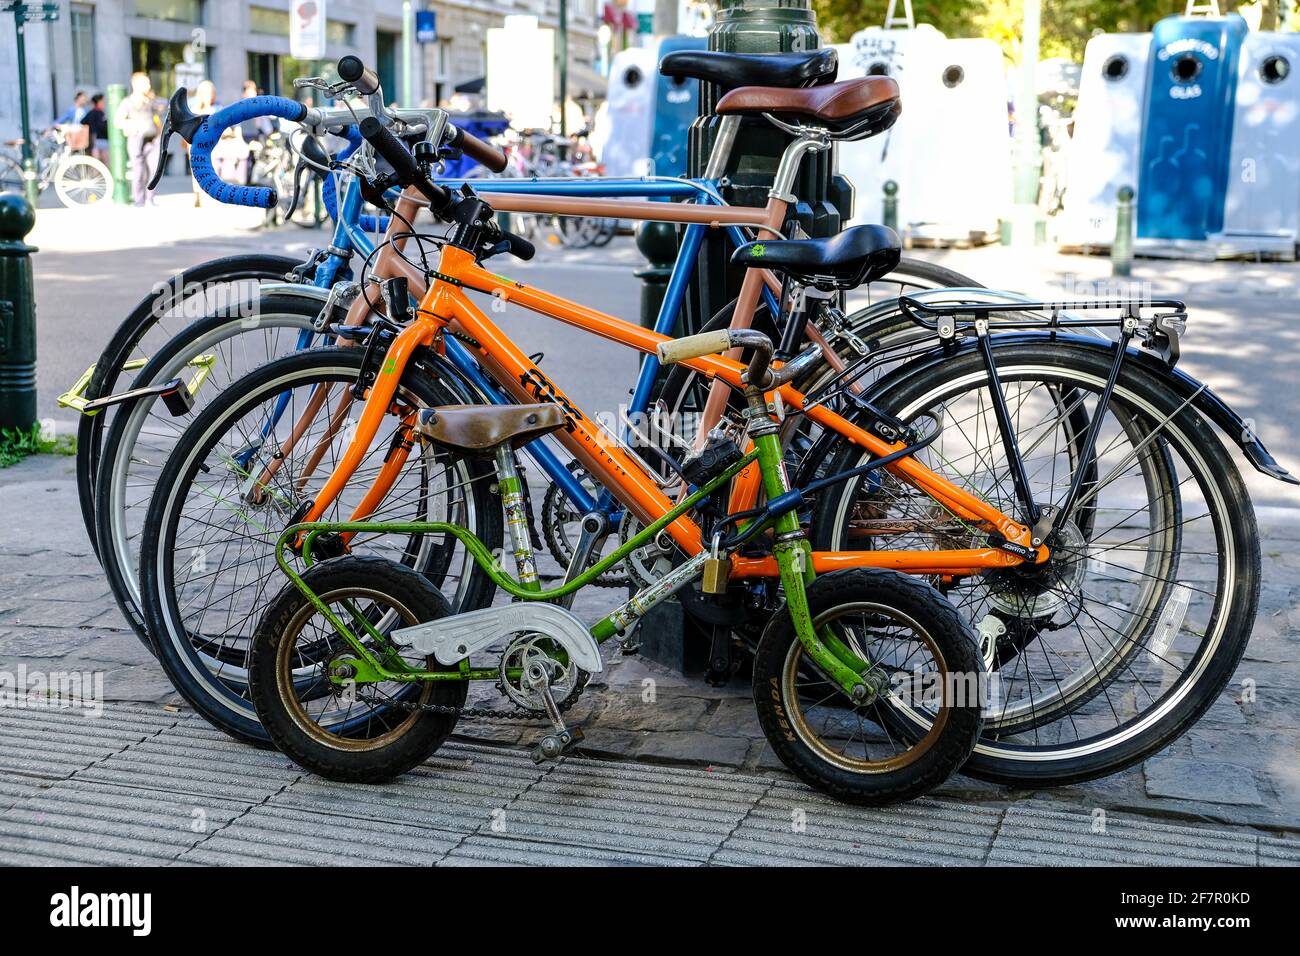 21.09.2019, Bruessel, Belgien - vier Fahrraeder einer Familie an einer Strasse in der Naehe der Kirche Sainte-Catherine in Brüssel Foto de stock